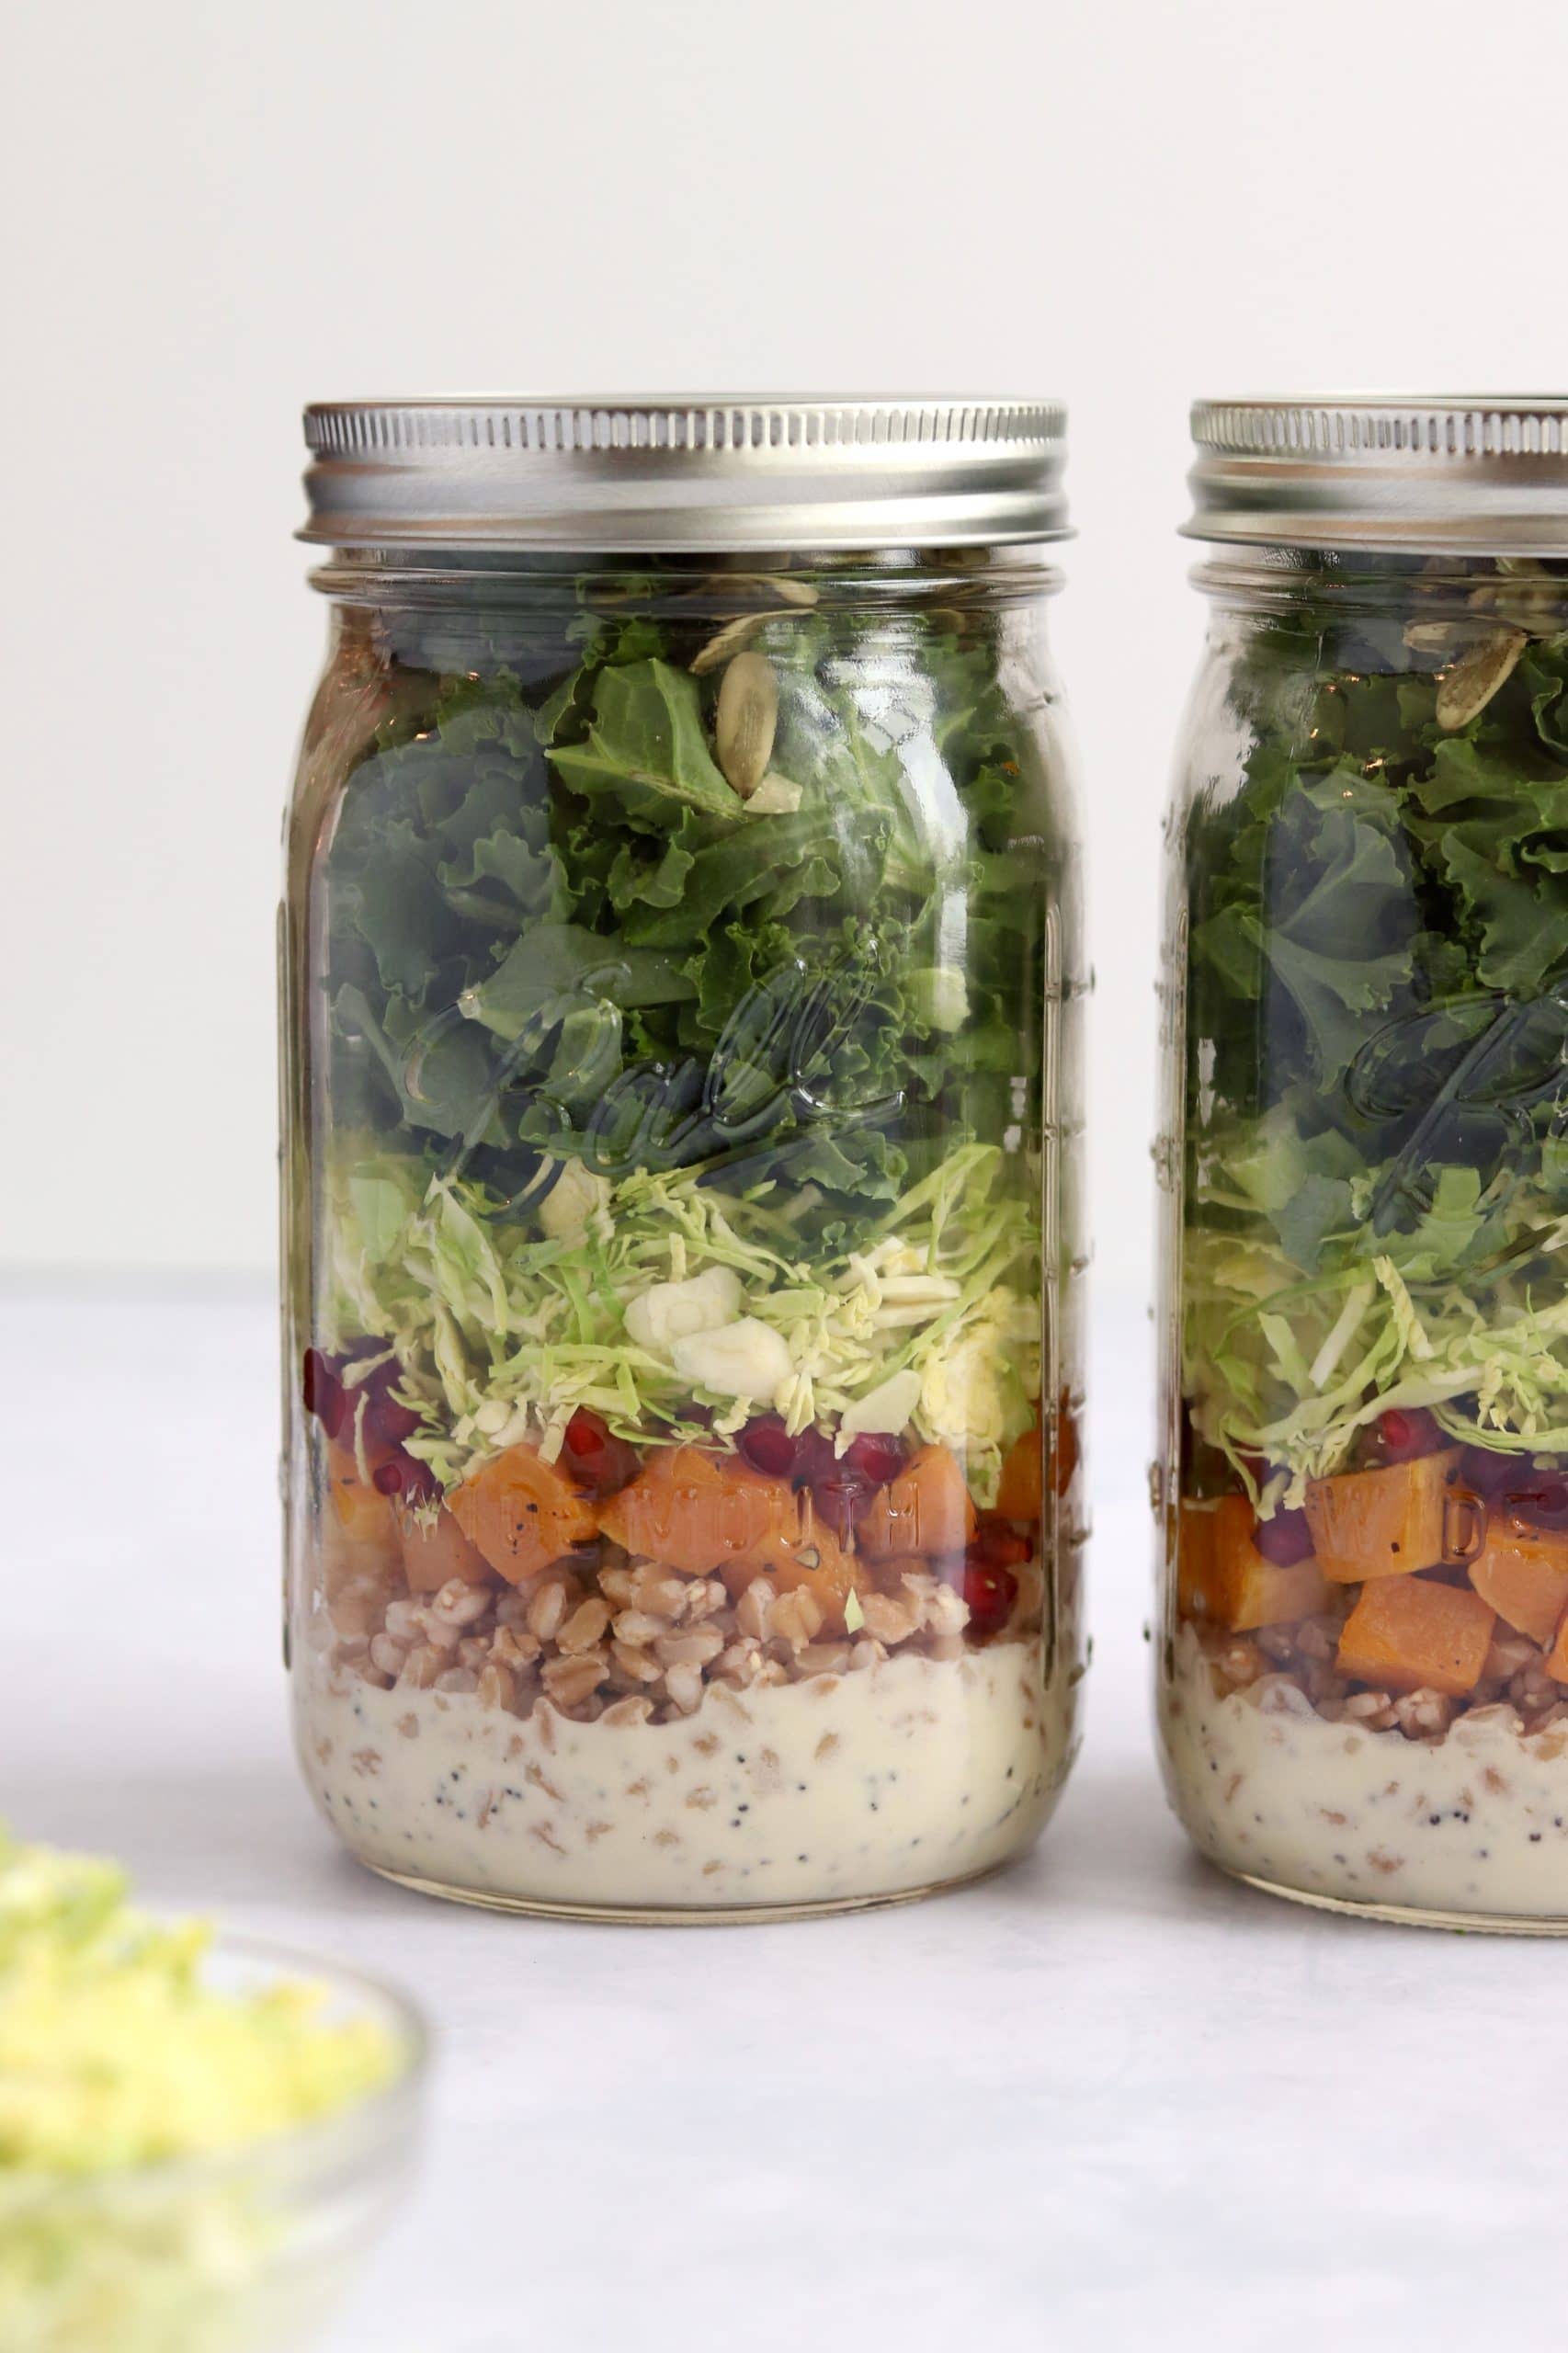 Kale mason jar salad with roasted squash